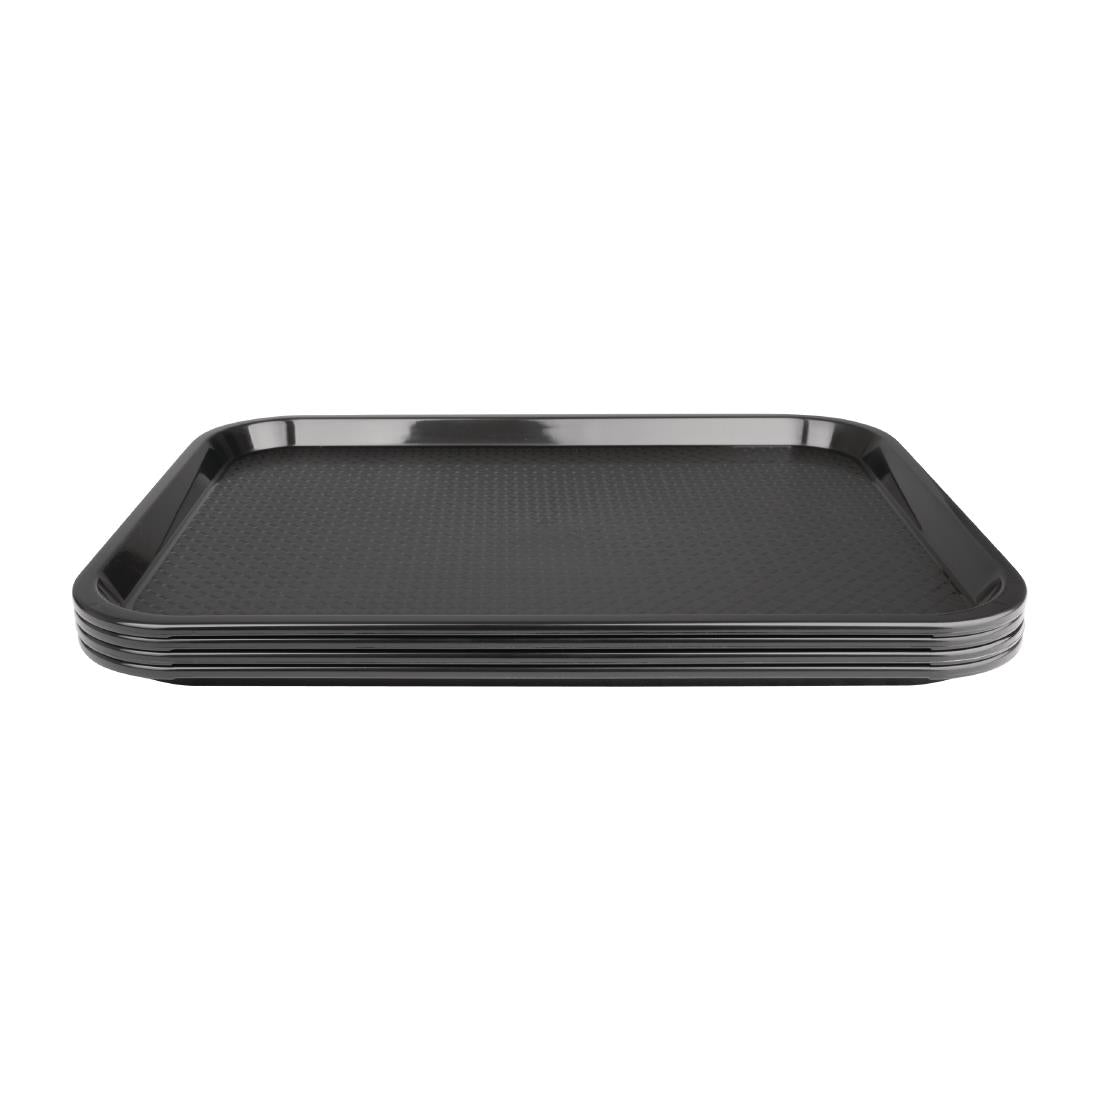 Kristallon Medium Polypropylene Fast Food Tray Black 415mm JD Catering Equipment Solutions Ltd